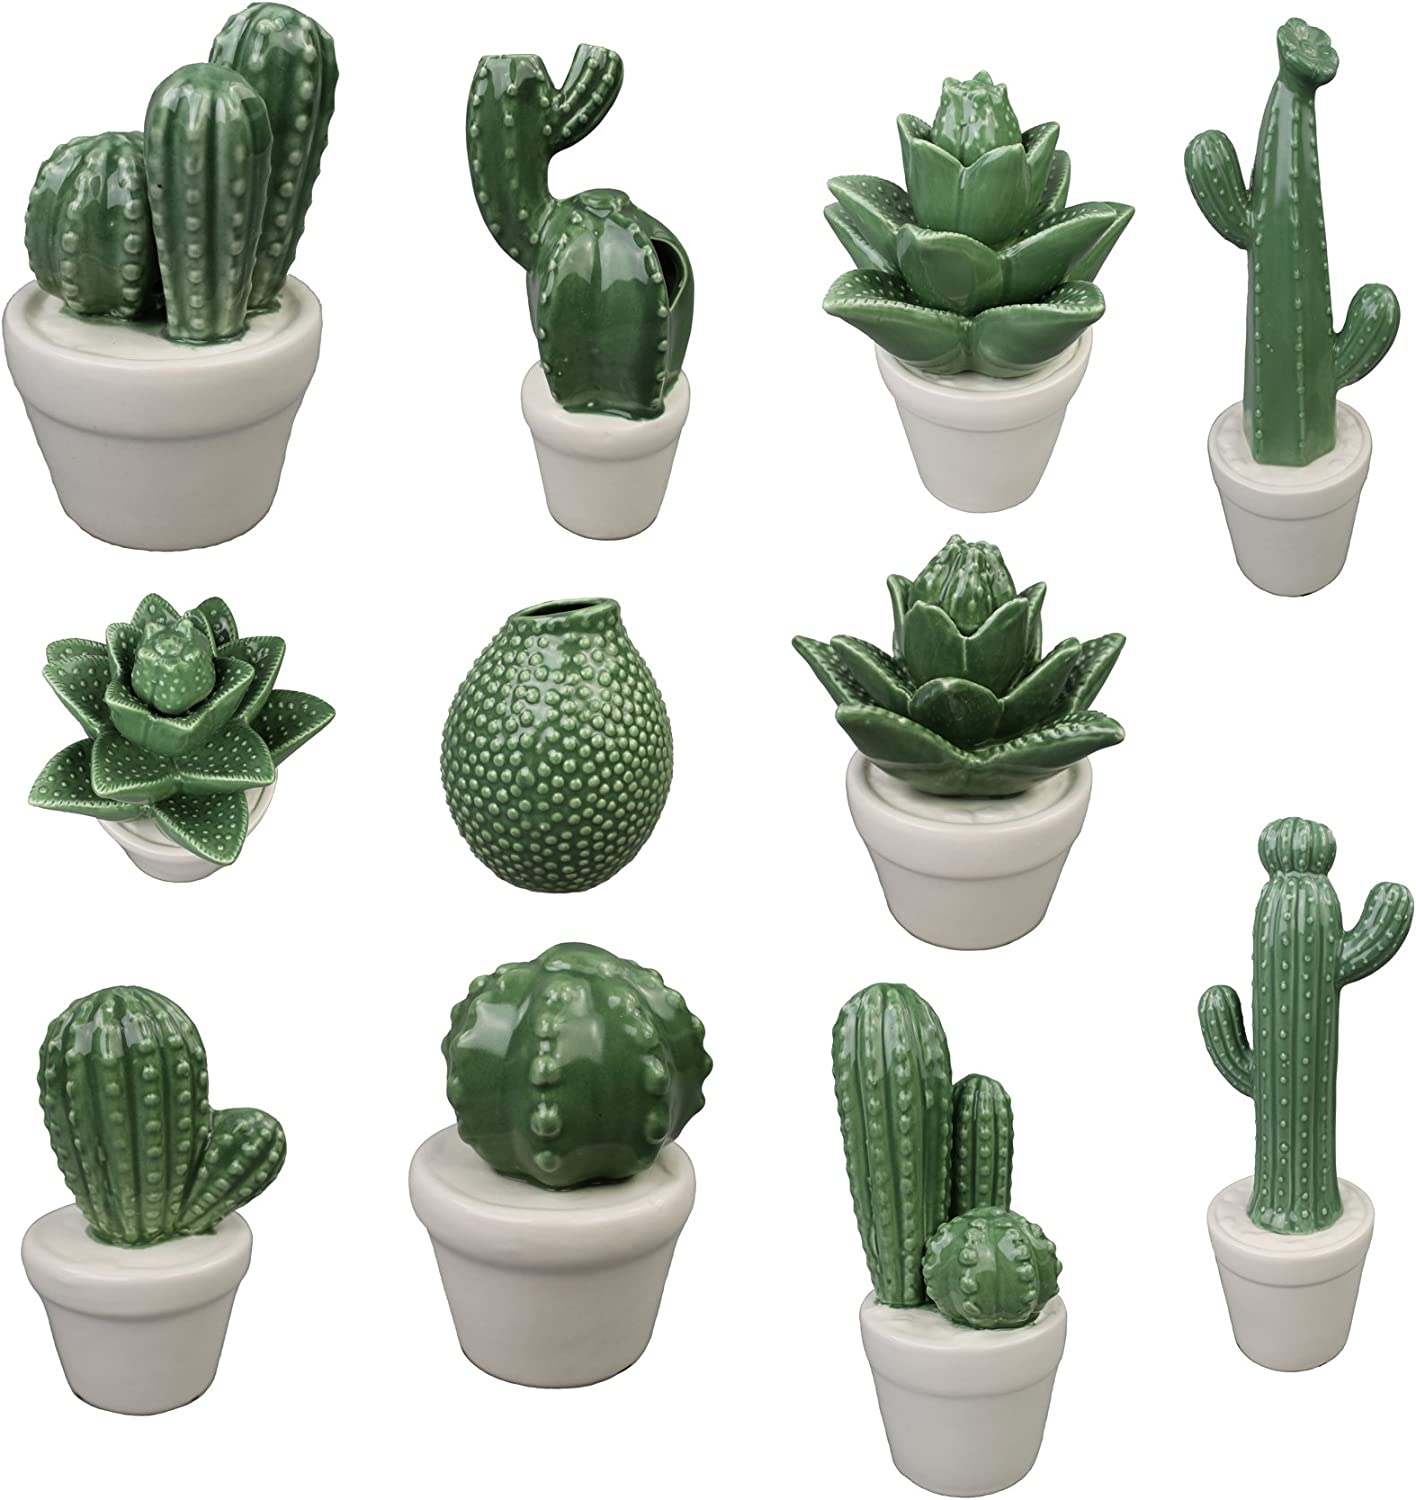 GMMH Ceramic Cactus Cacti Models Available Decorative Vase Ceramic (22-7 Height 12 cm)